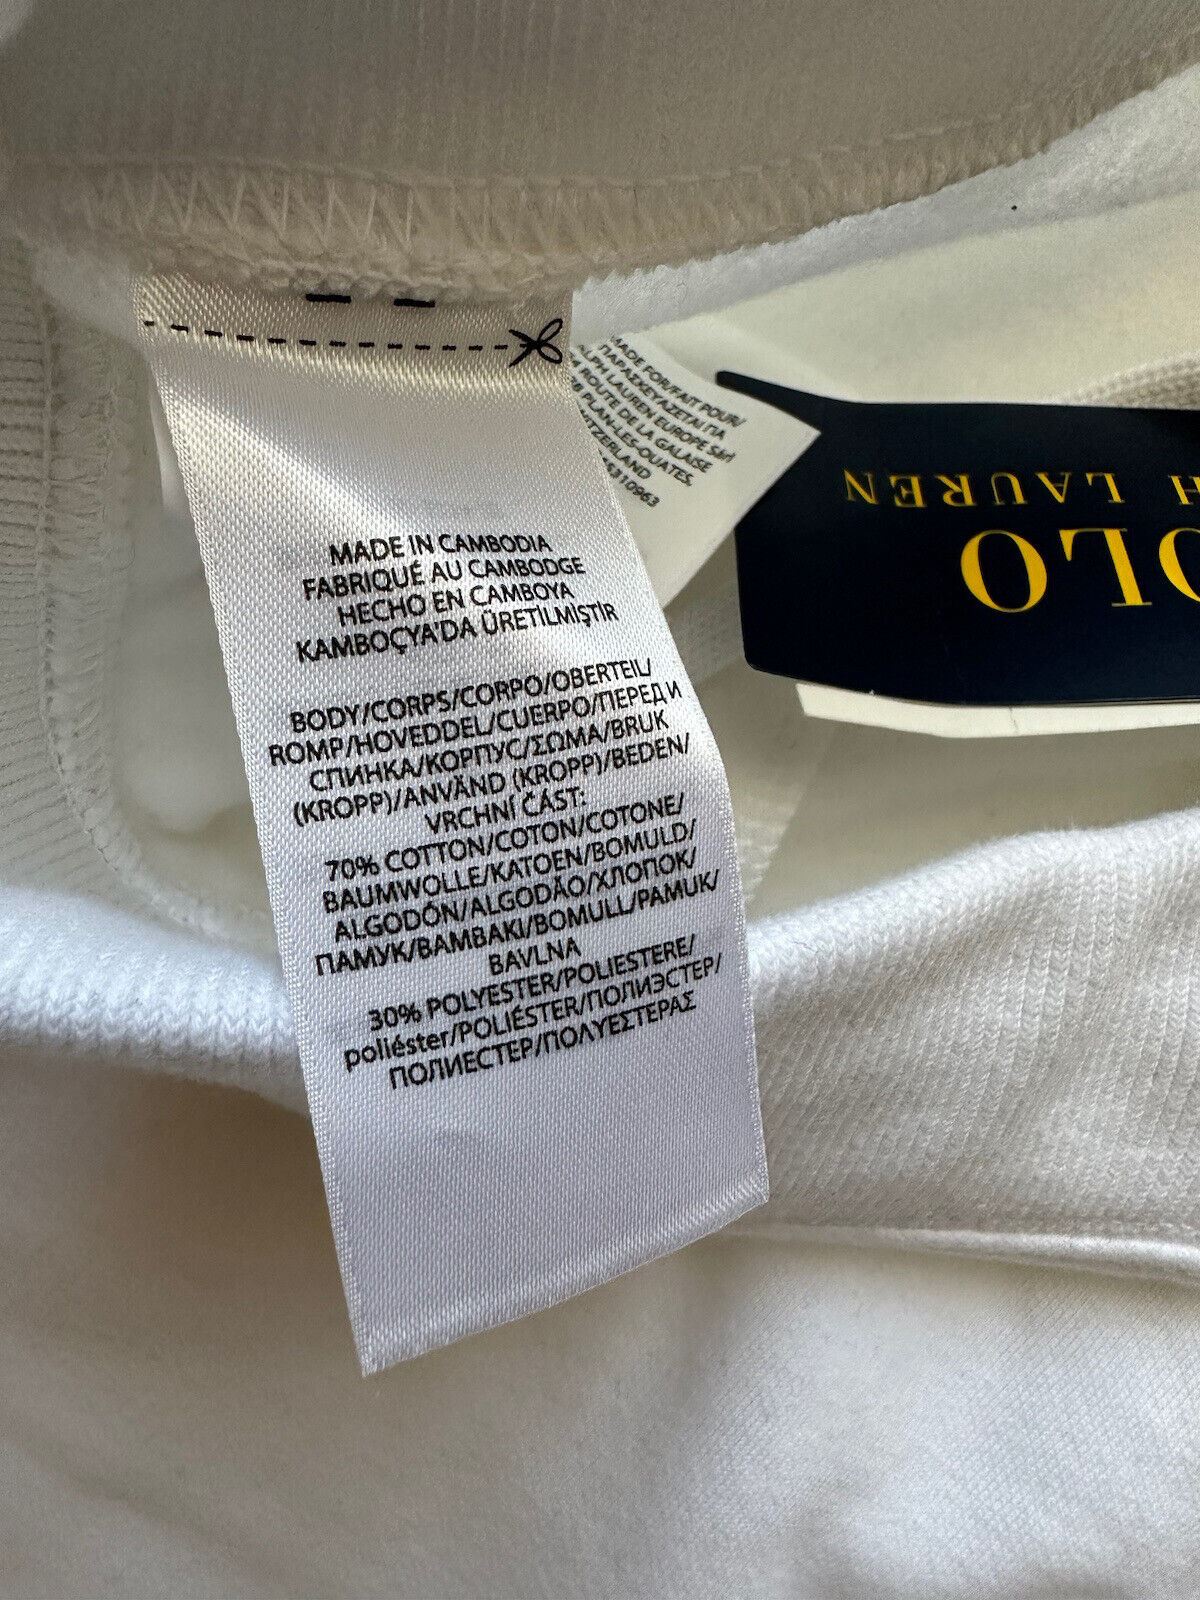 СЗТ $138 Polo Ralph Lauren Мужские белые повседневные спортивные штаны с логотипом XL/TG